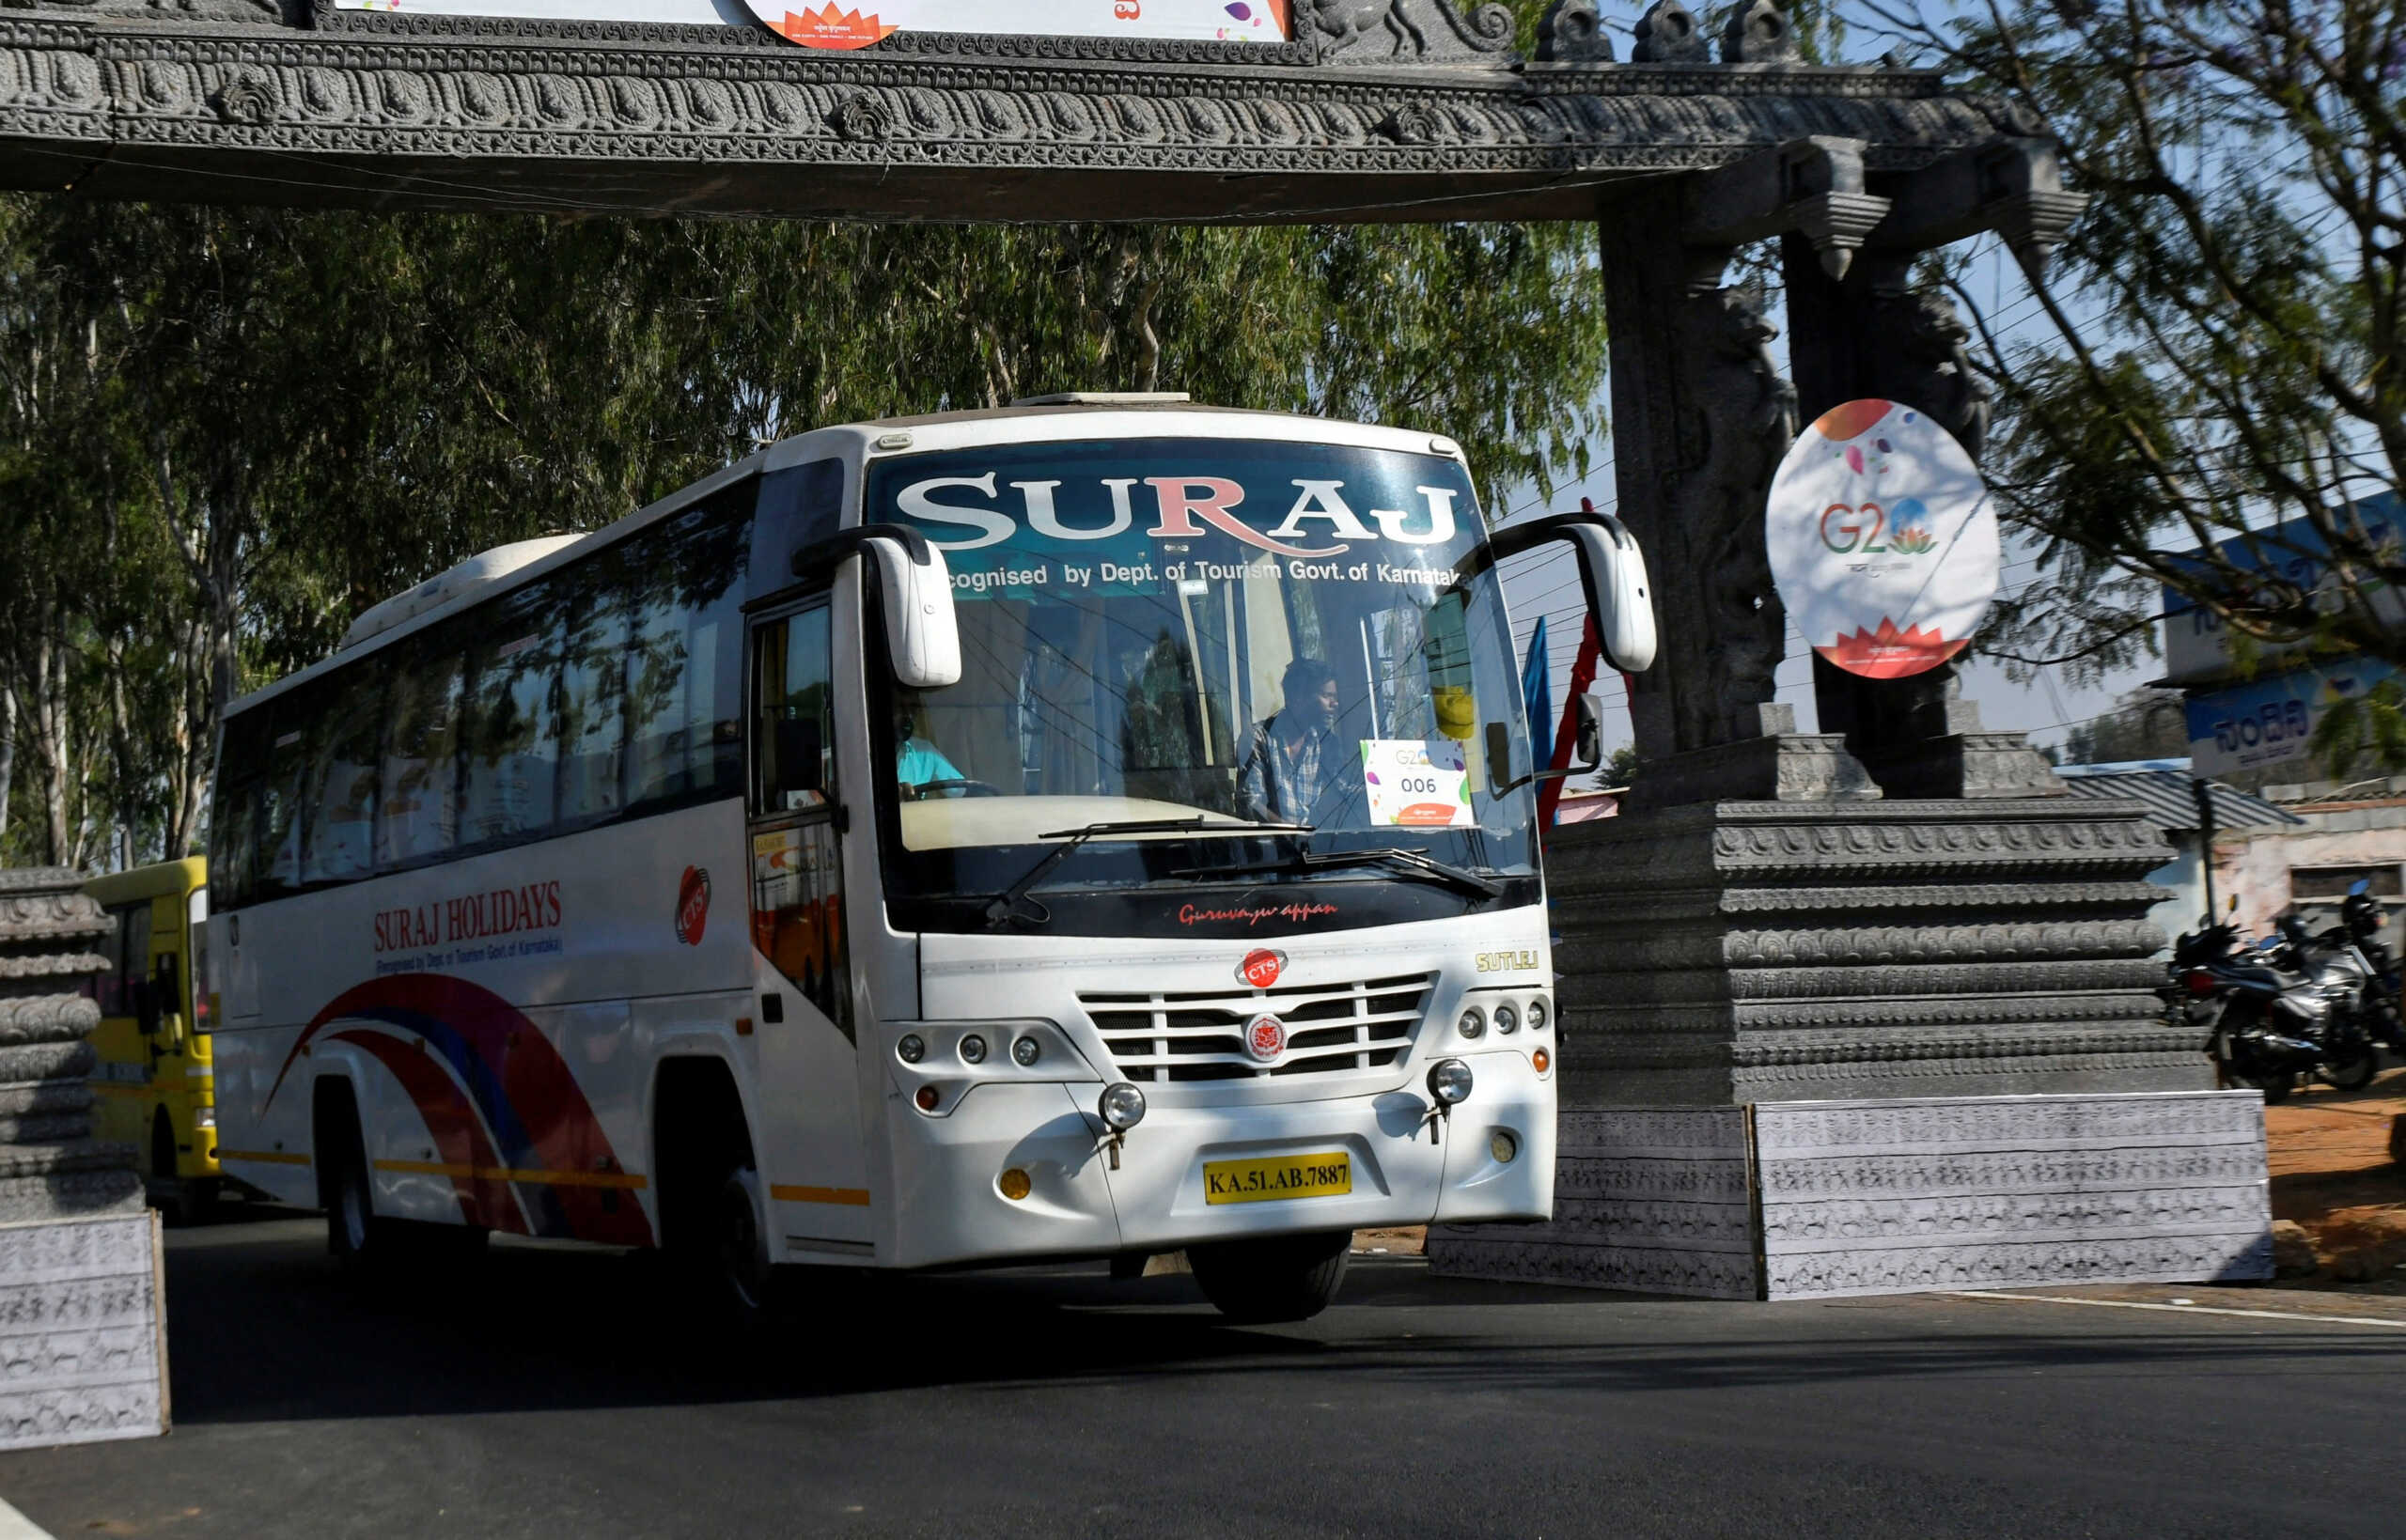 Ινδία: Τροχαίο δυστύχημα με σχολικό λεωφορείο, τουλάχιστον 4 παιδιά νεκρά